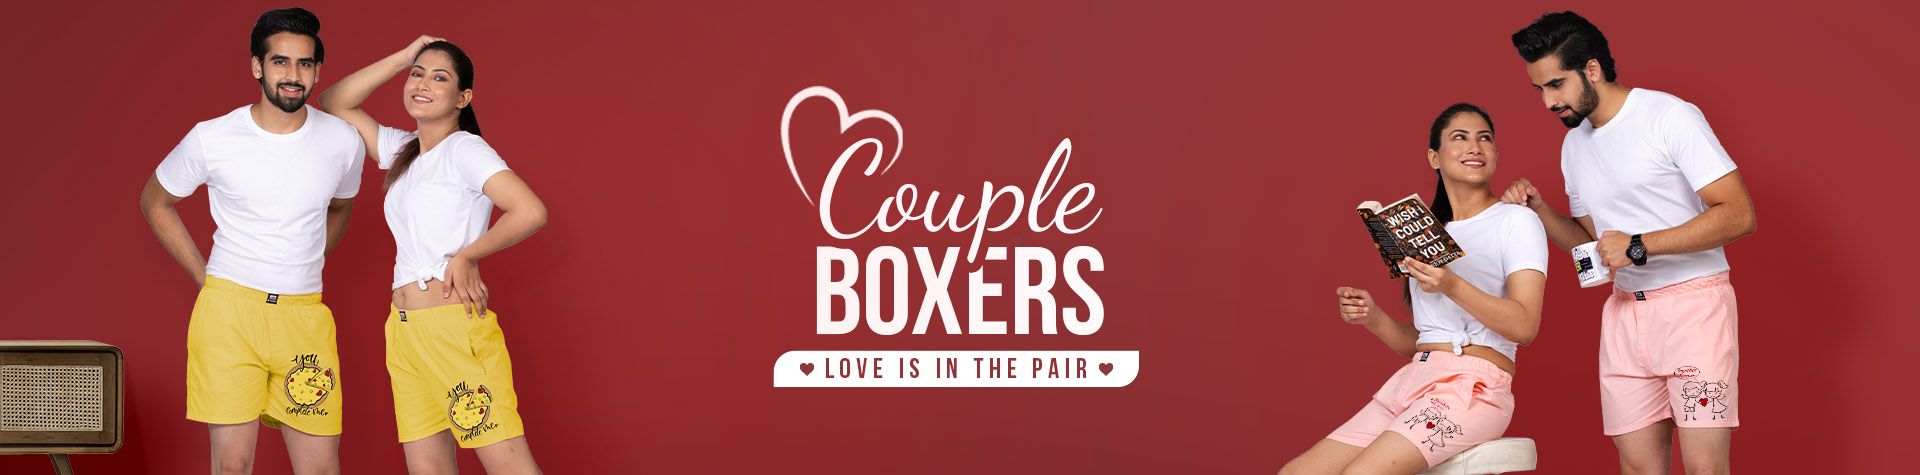 Couple Boxers